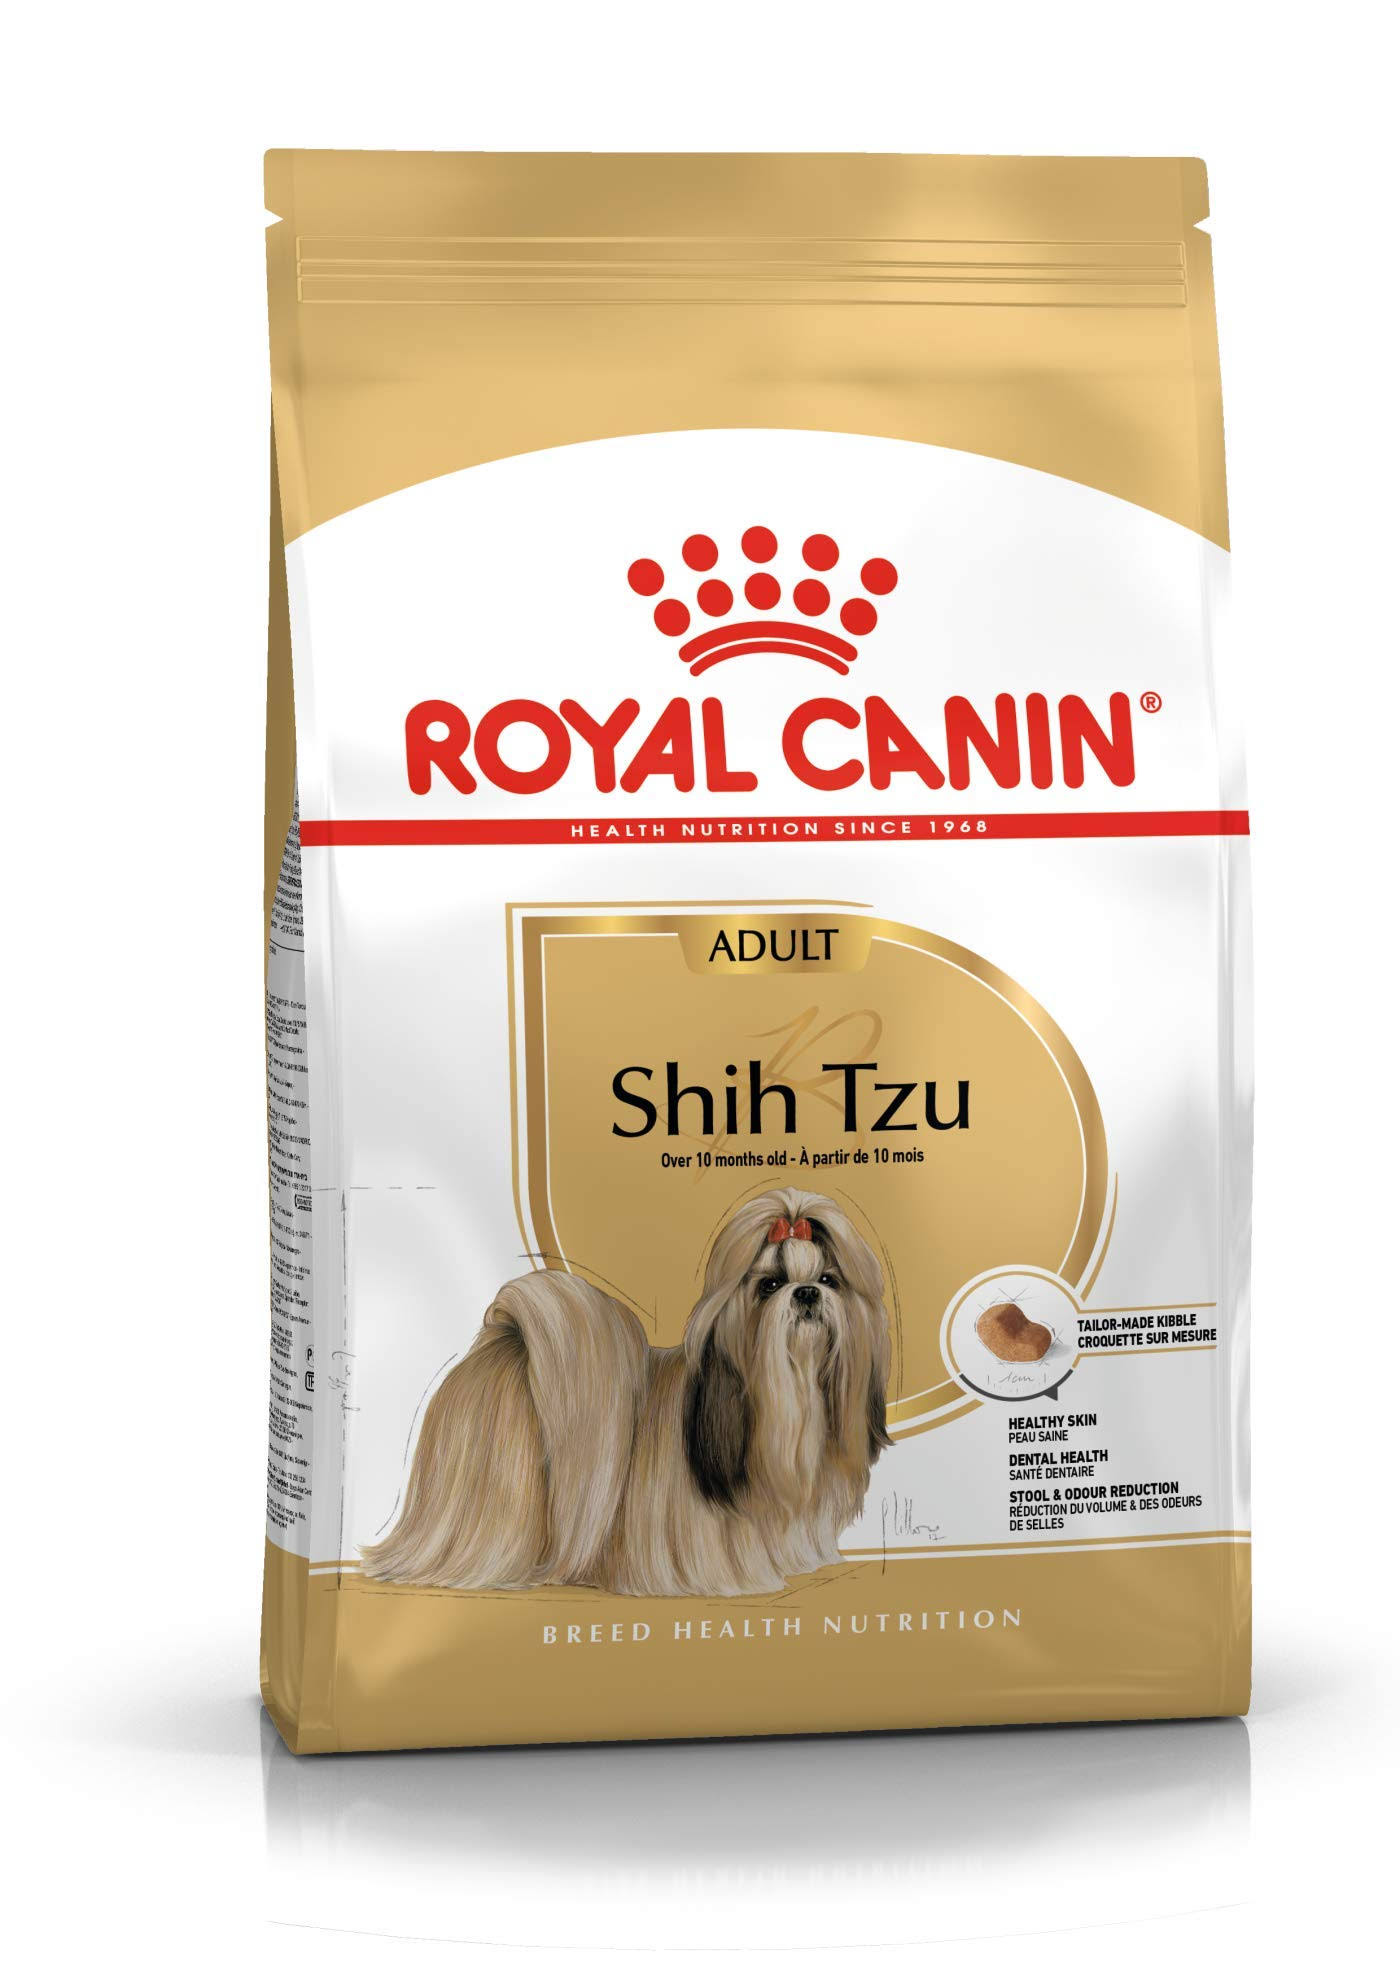 Royal Canin Adult Shih Tzu Dog Food 1.5Kg